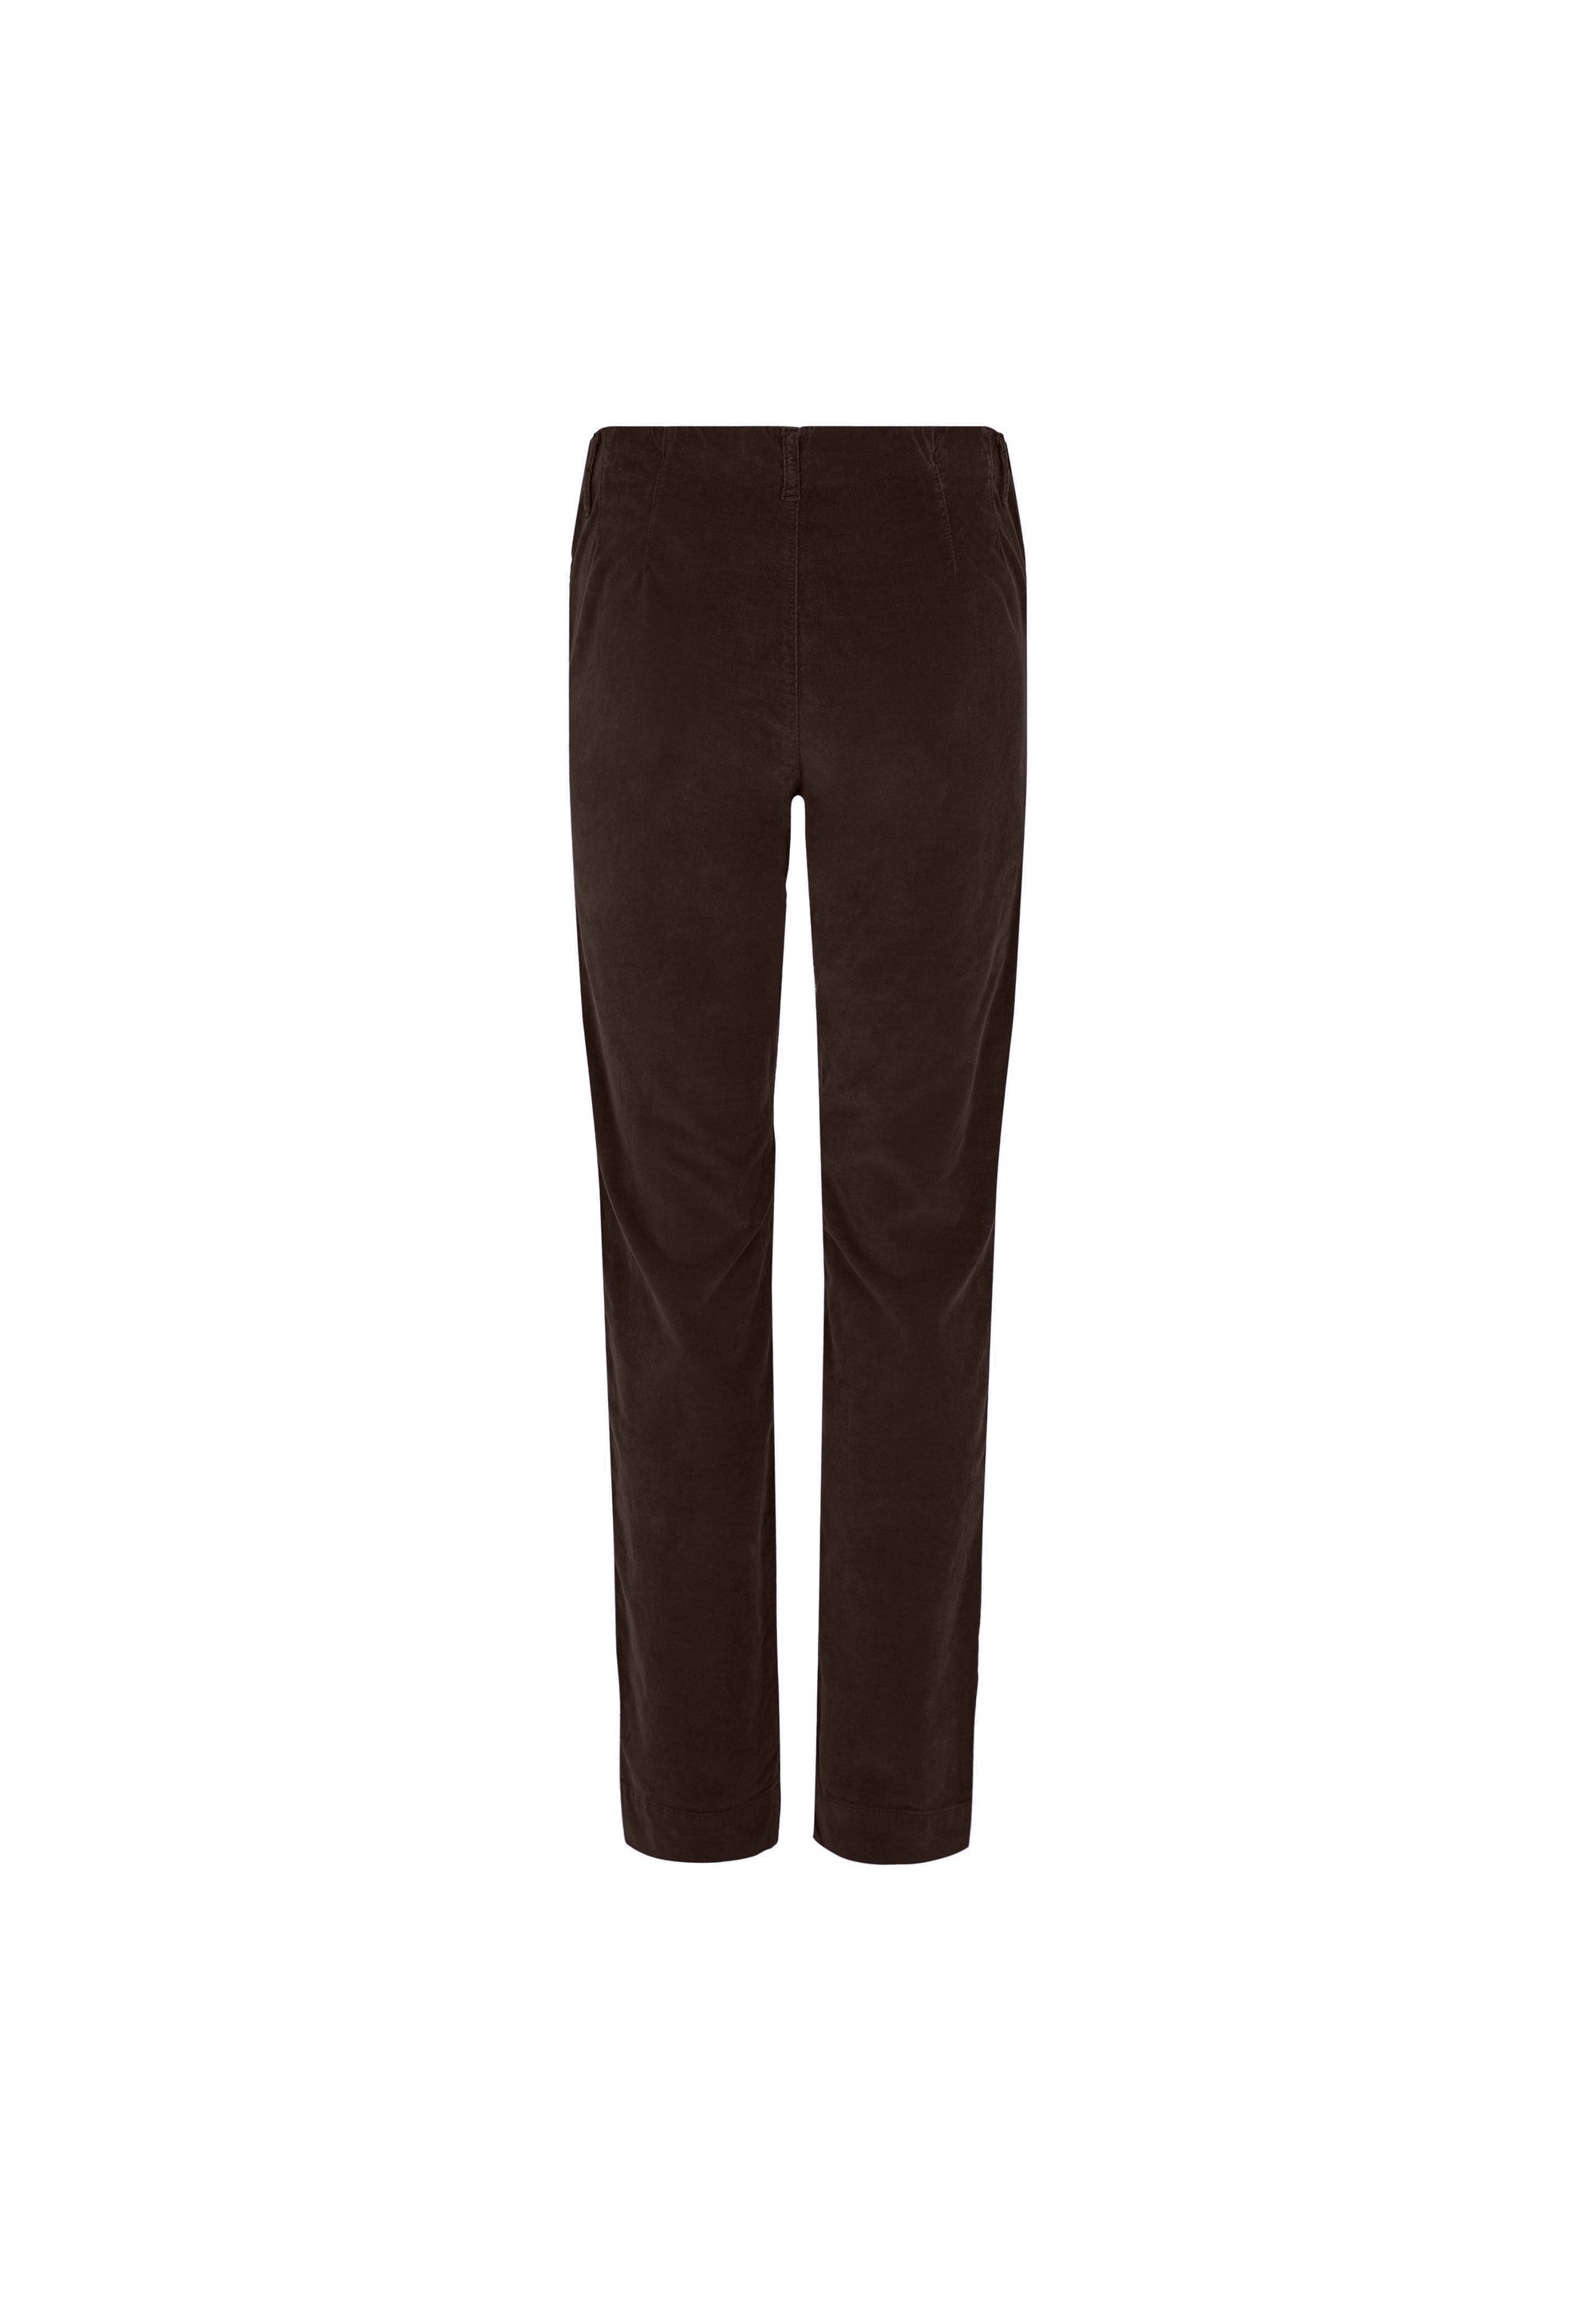 LAURIE  Kelly Regular Corduroy - Medium Length Trousers REGULAR 88000 Brown